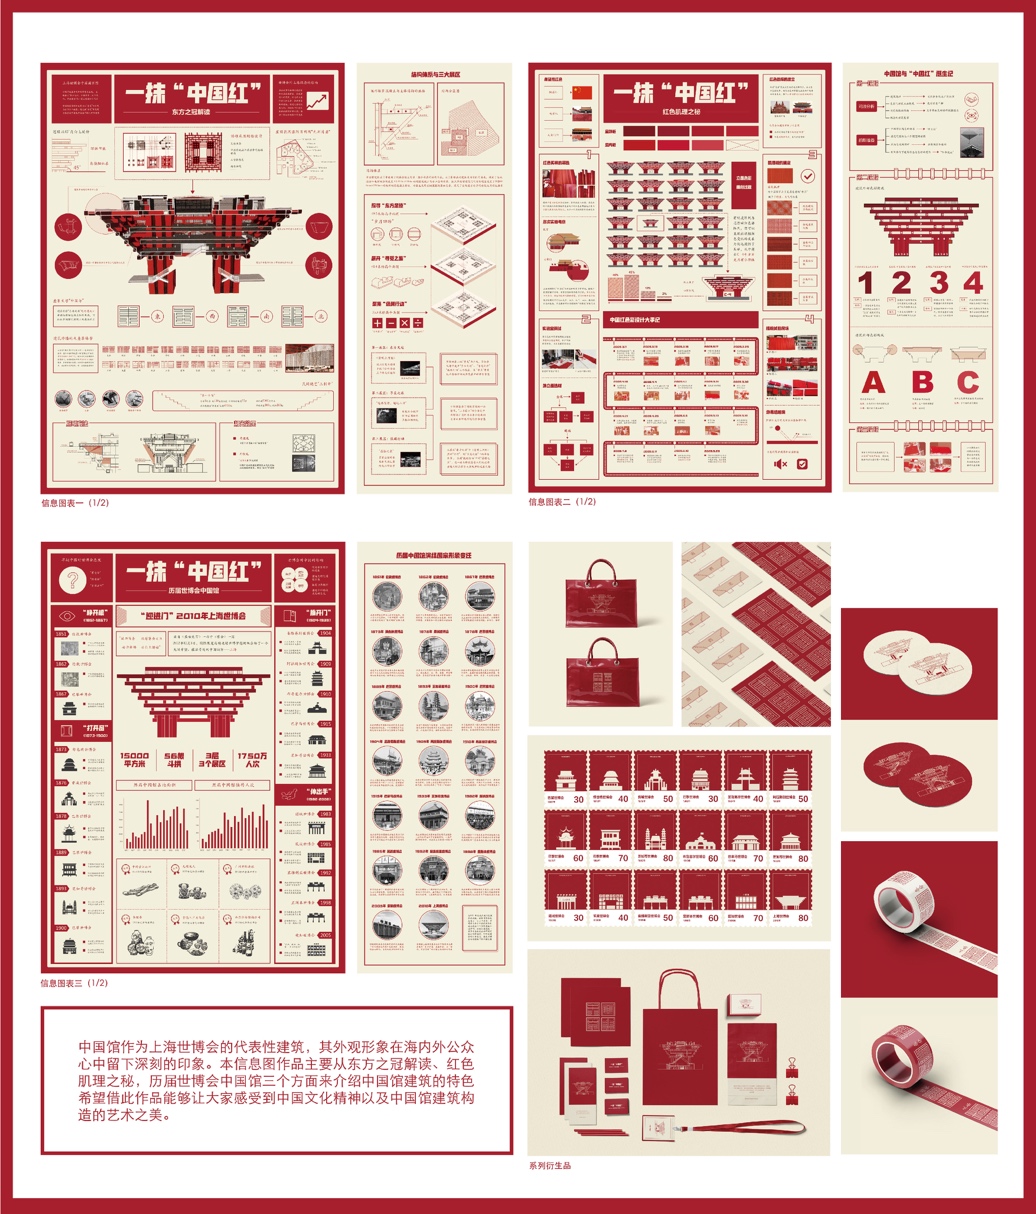 “一抹‘中国红’”上海世博馆信息图表设计（毕业设计作品）